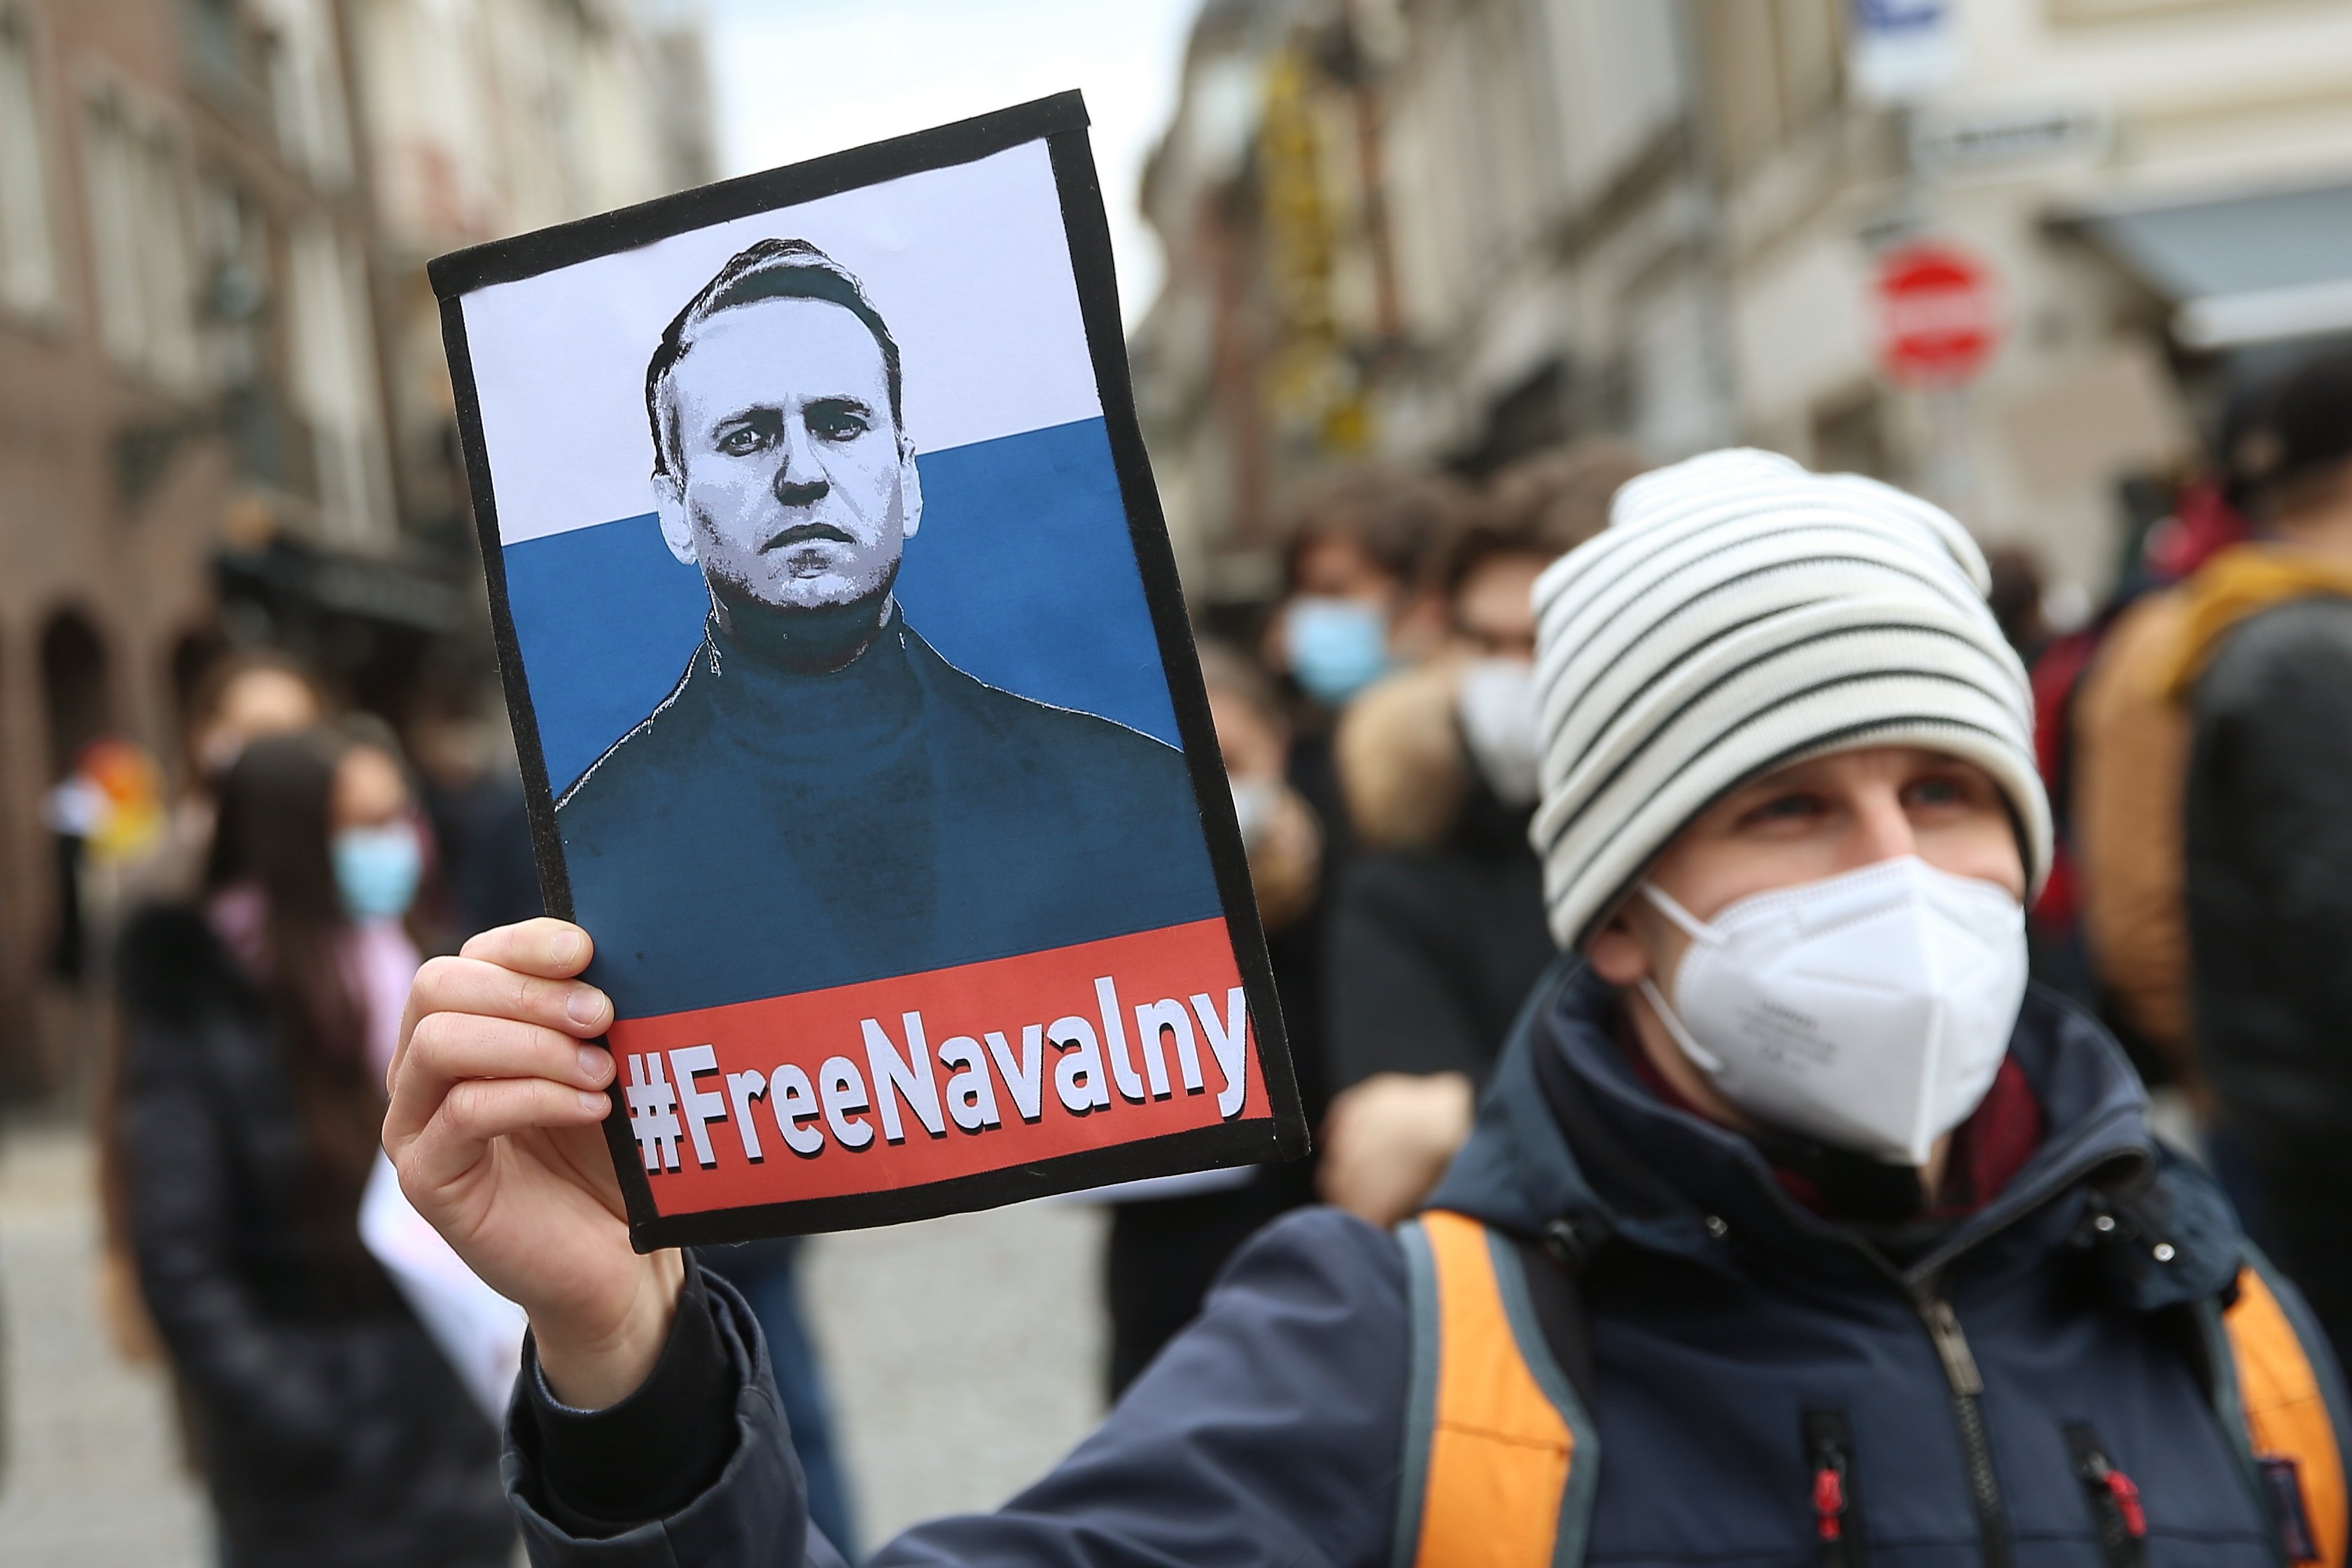 Preocupación por la salud de Navalni en prisión: 290 médicos le exigen a Putin asistencia médica